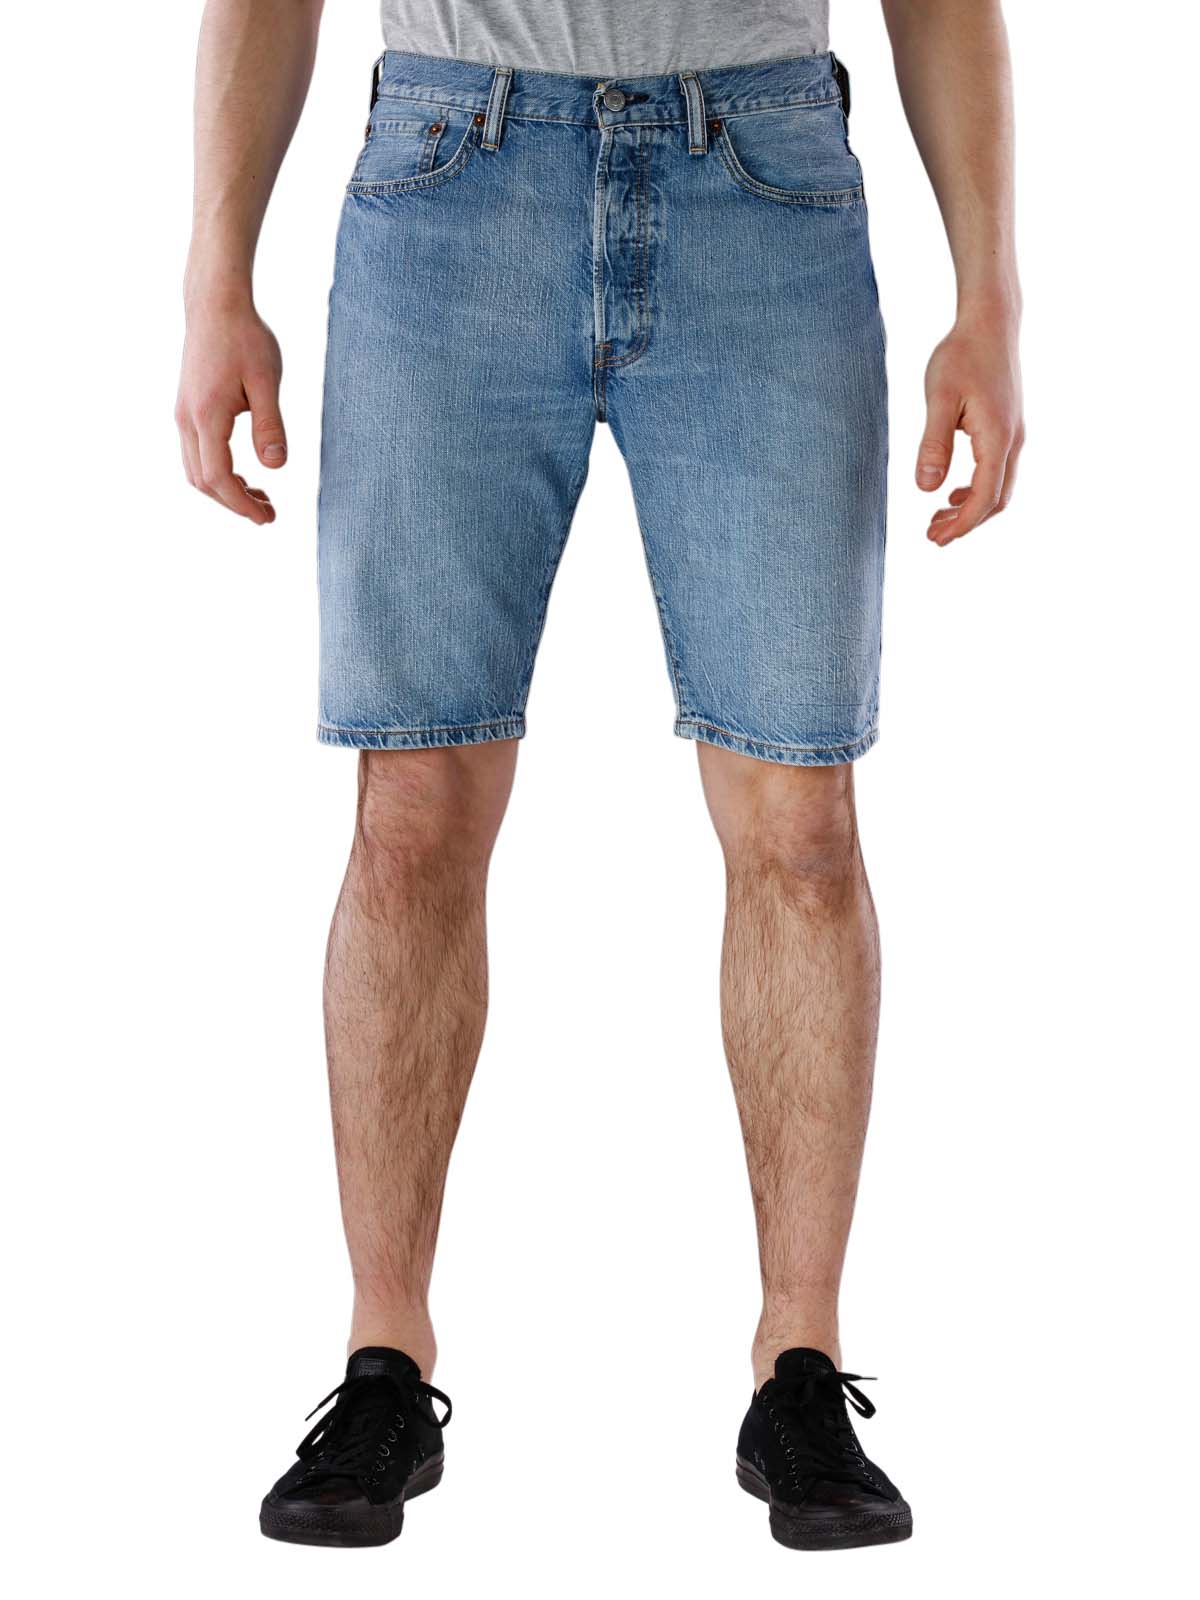 levis 501 hemmed shorts